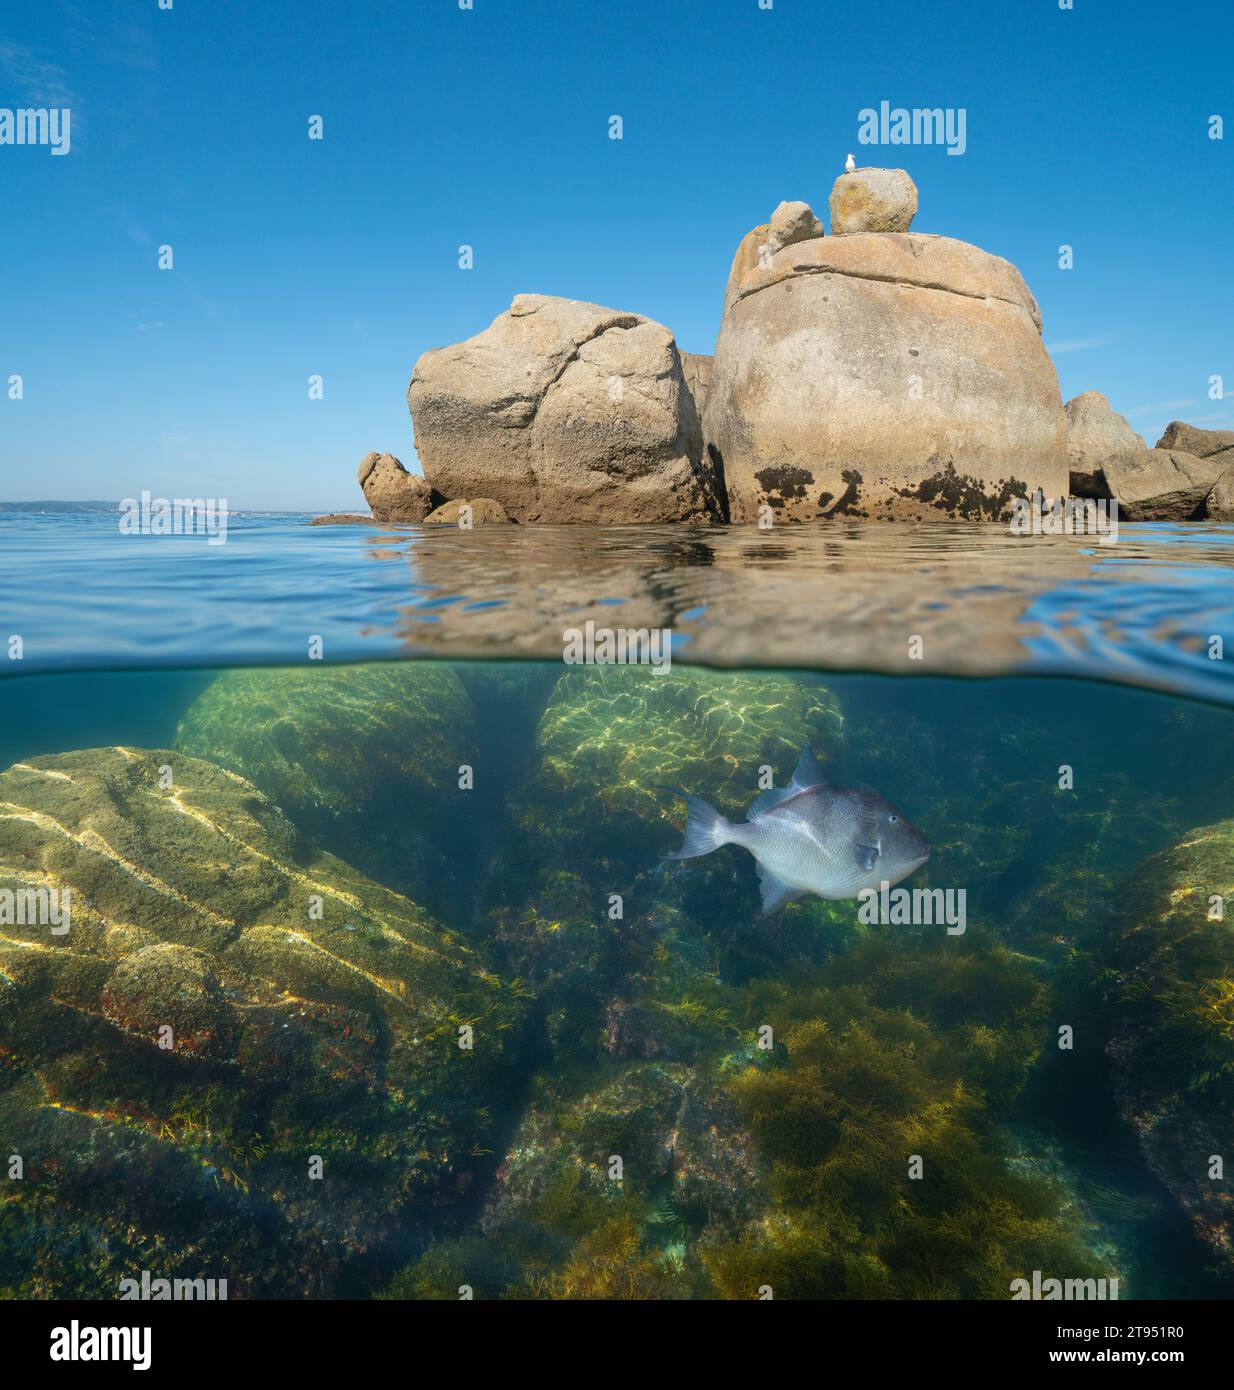 Seascape Boulders dans l'océan Atlantique vue divisée sur et sous la surface de l'eau, scène naturelle, Espagne, Galice, Rias Baixas Banque D'Images